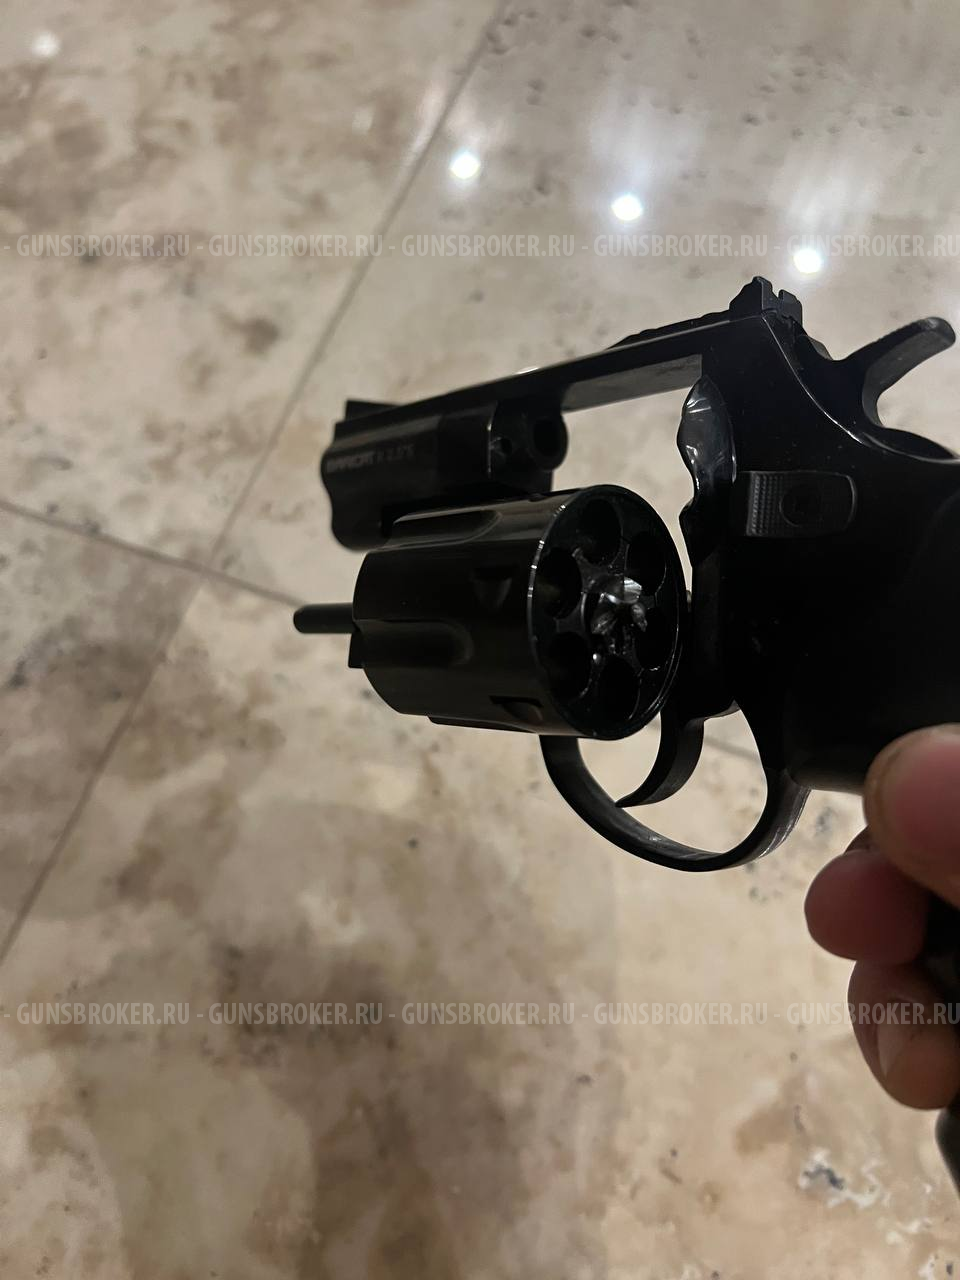 Сигнальный револьвер Baricat калибр 9мм P.A.K под патрон Техкрим Турция 